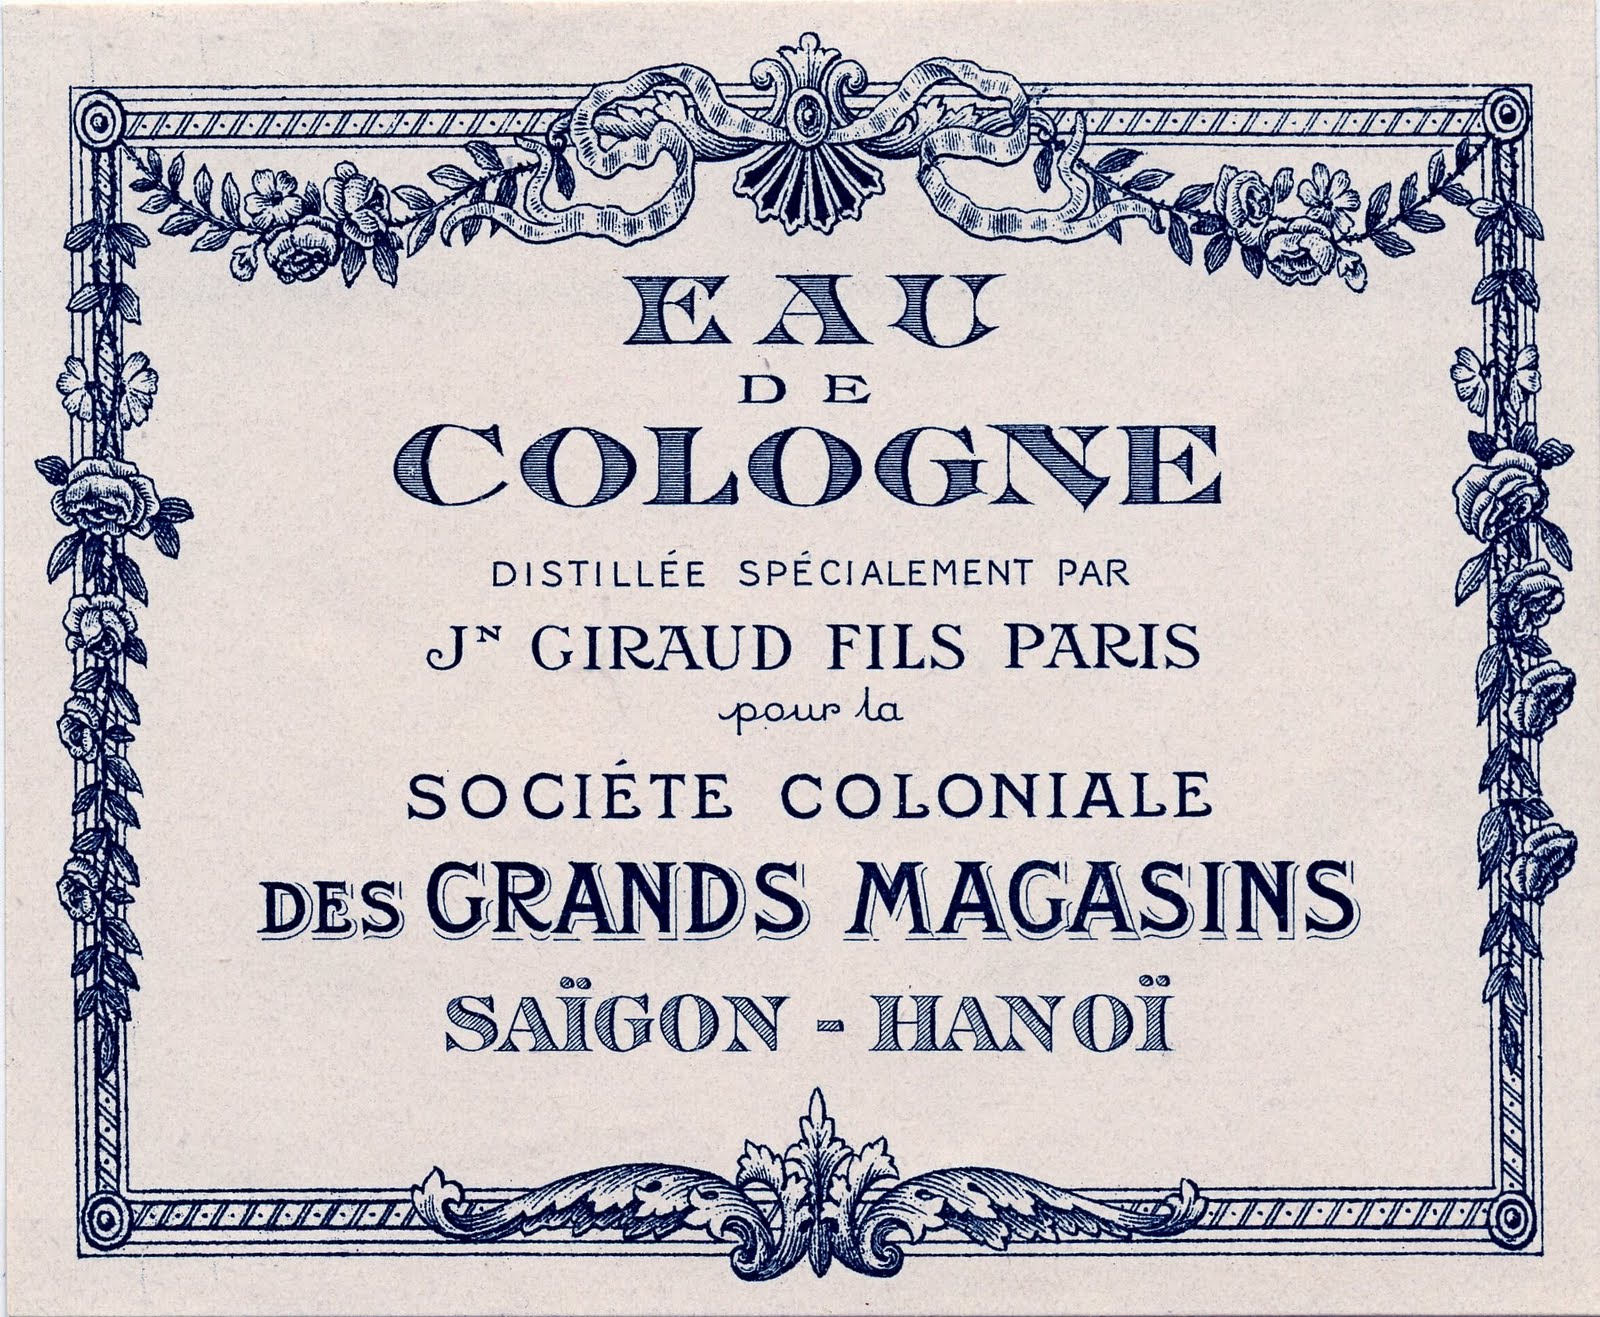 Vintage Graphics   Gorgeous Paris Cologne Label   The Graphics Fairy